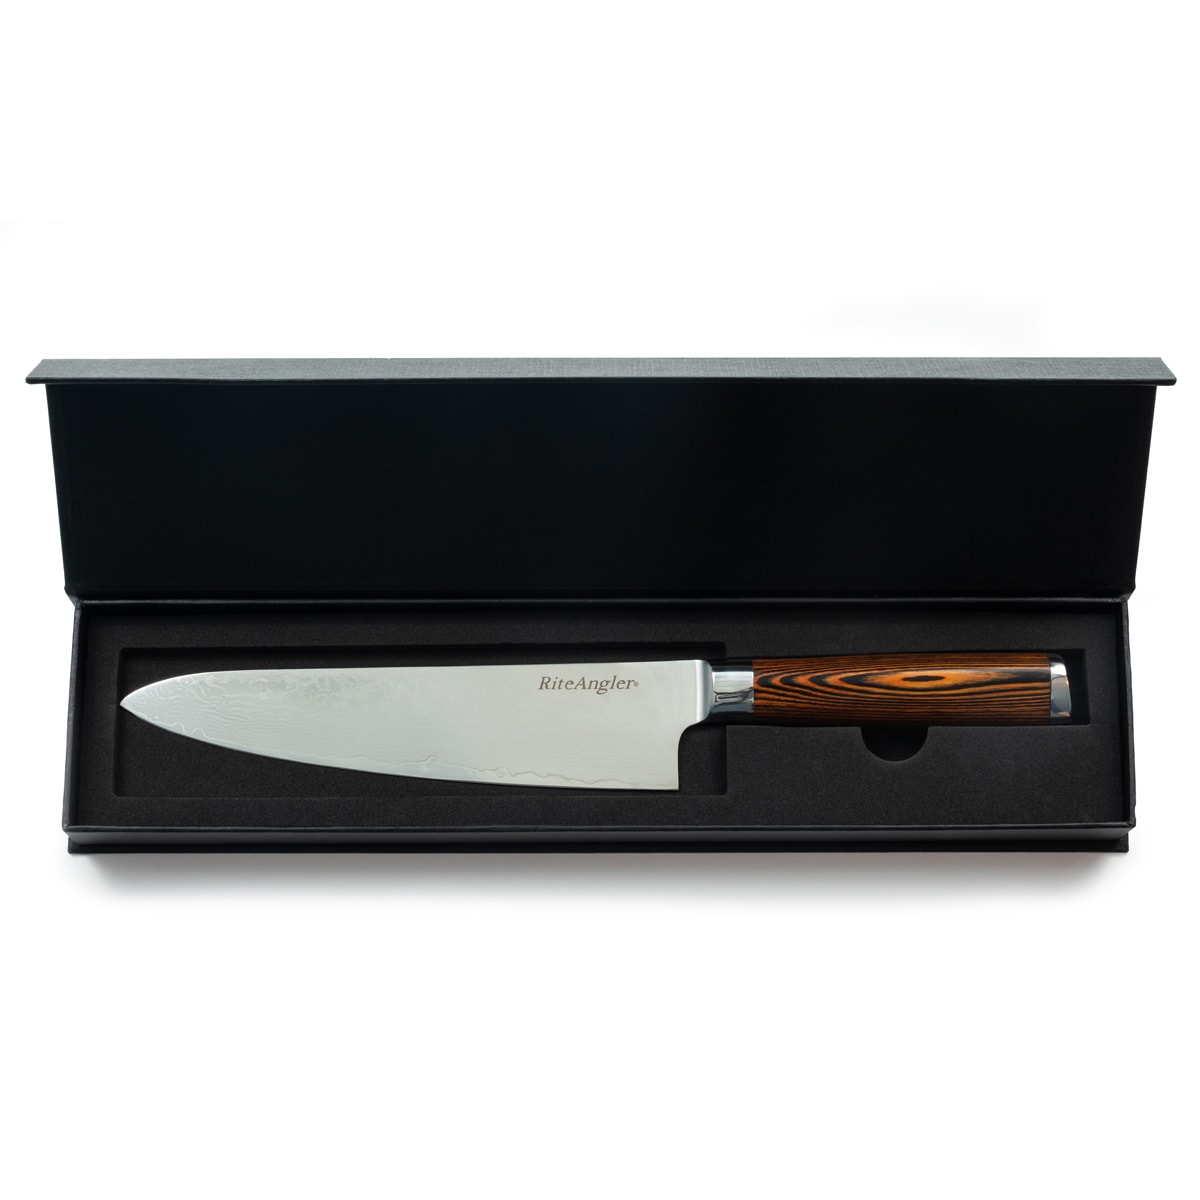 Rite Angler Damascus chef's knife